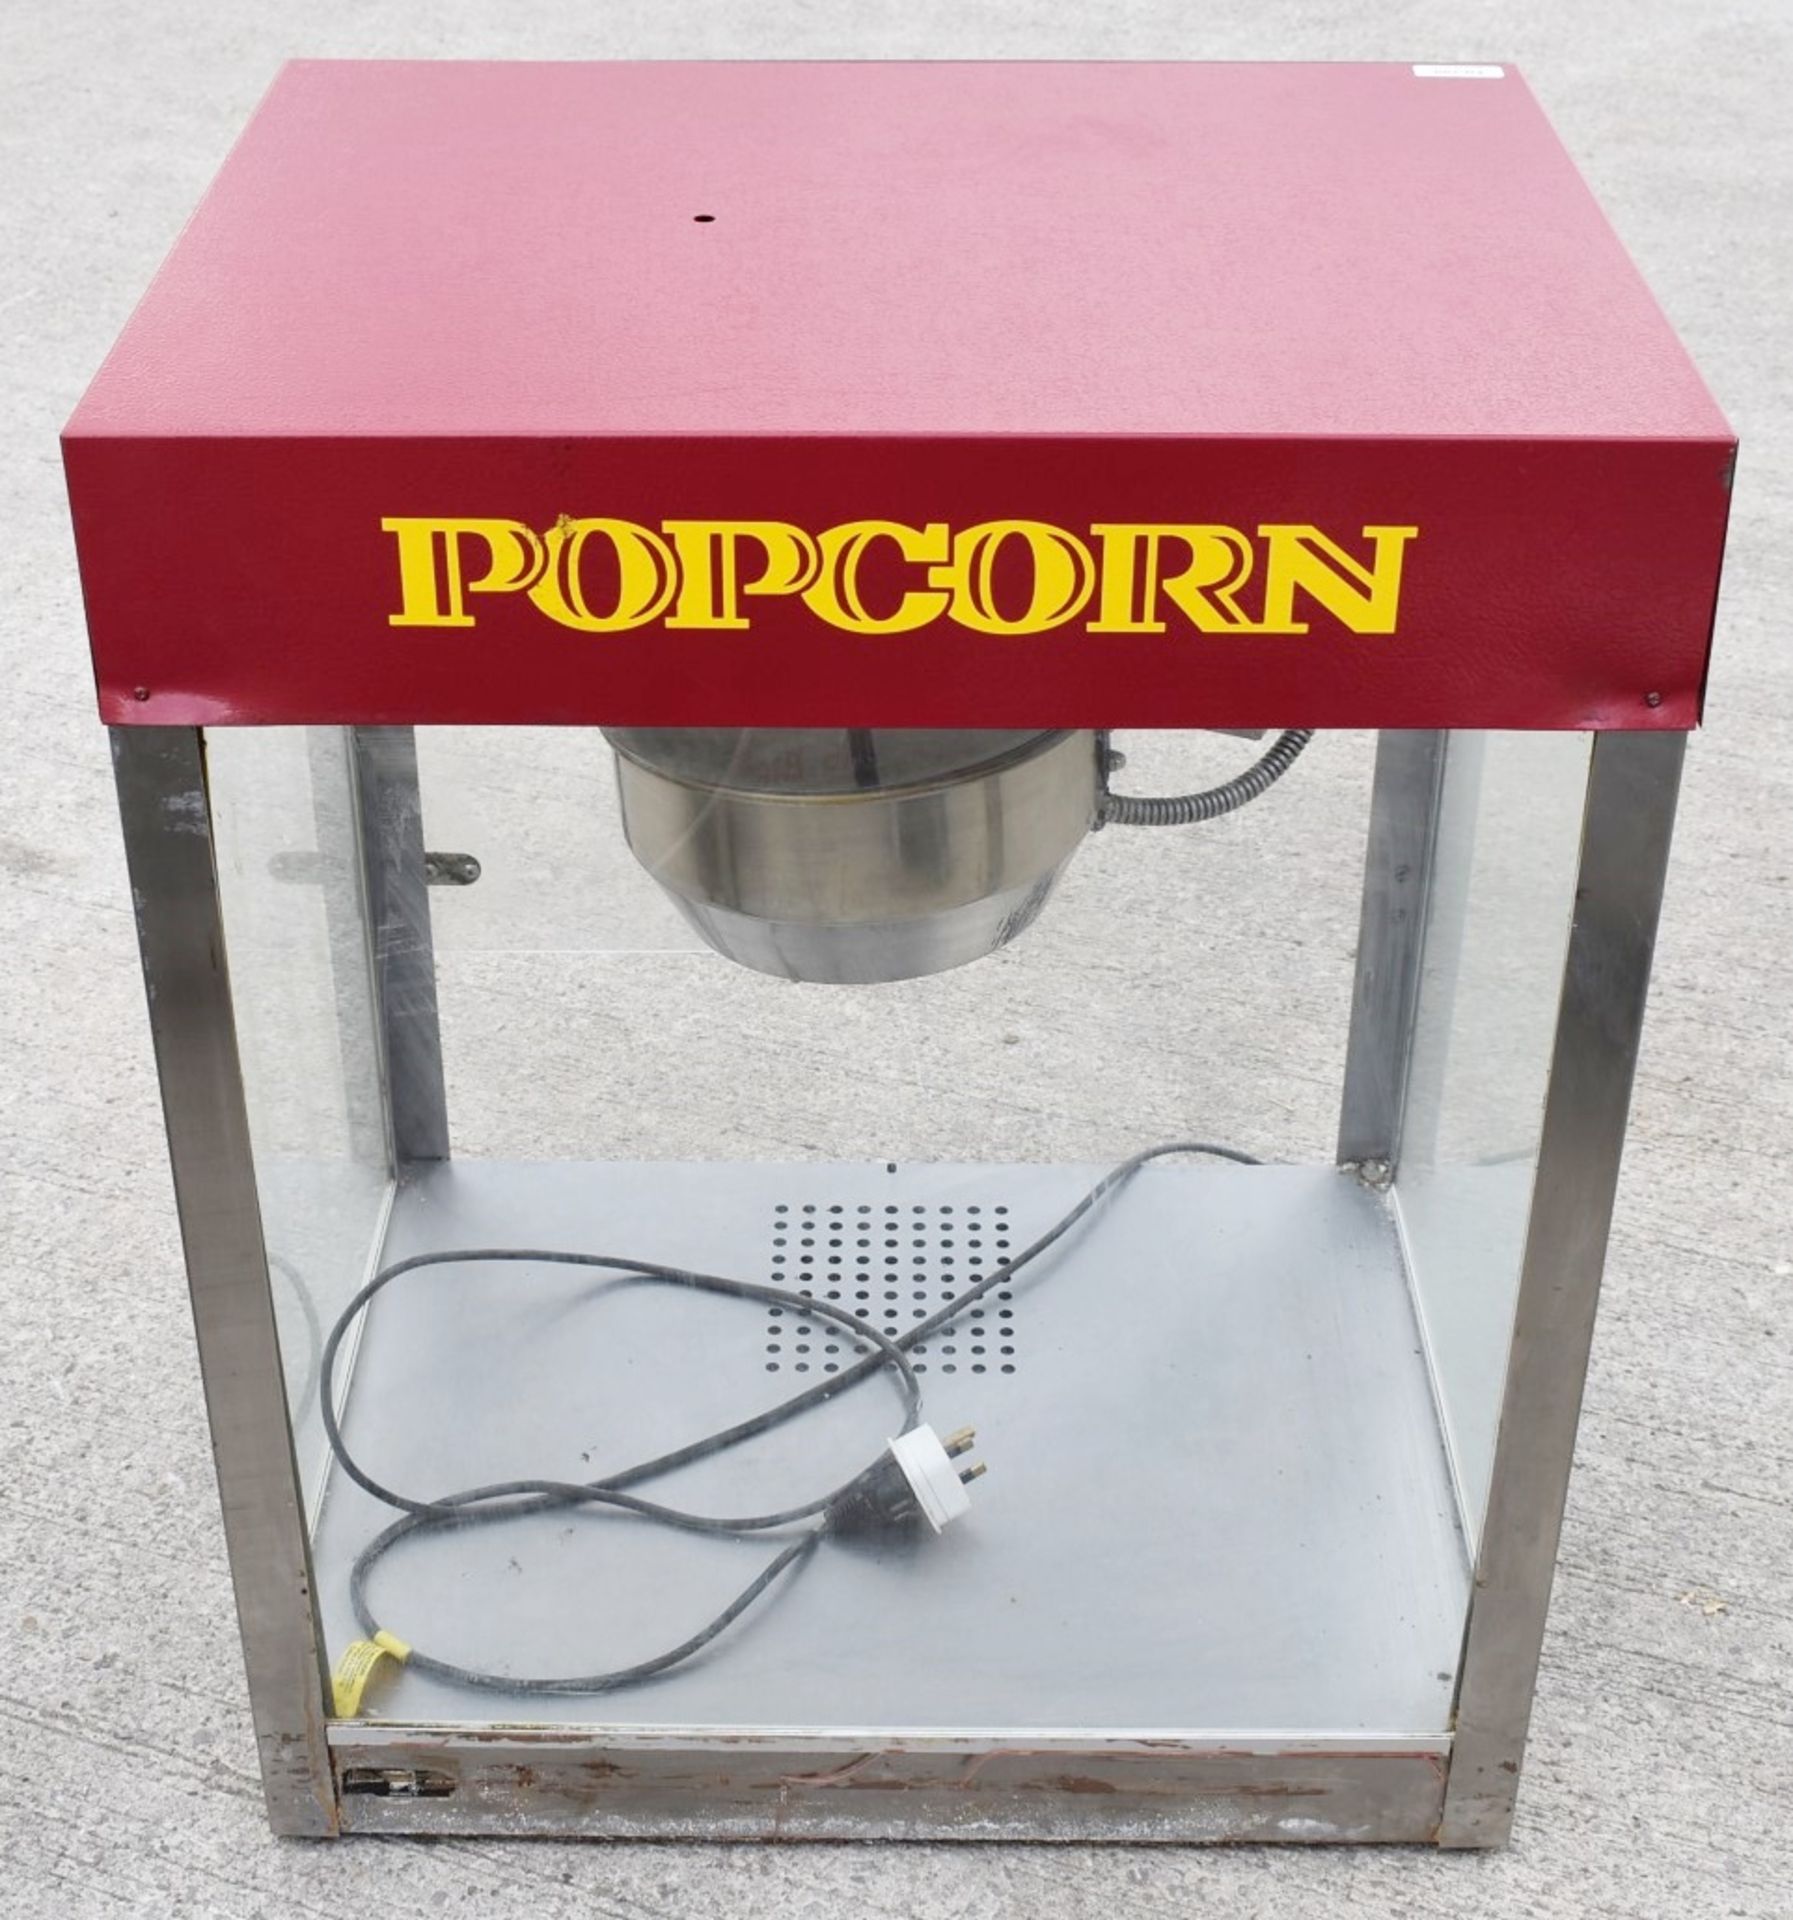 1 x Commercial Pop Corn Machine - Dimensions: H80 x W71 x D50 cms